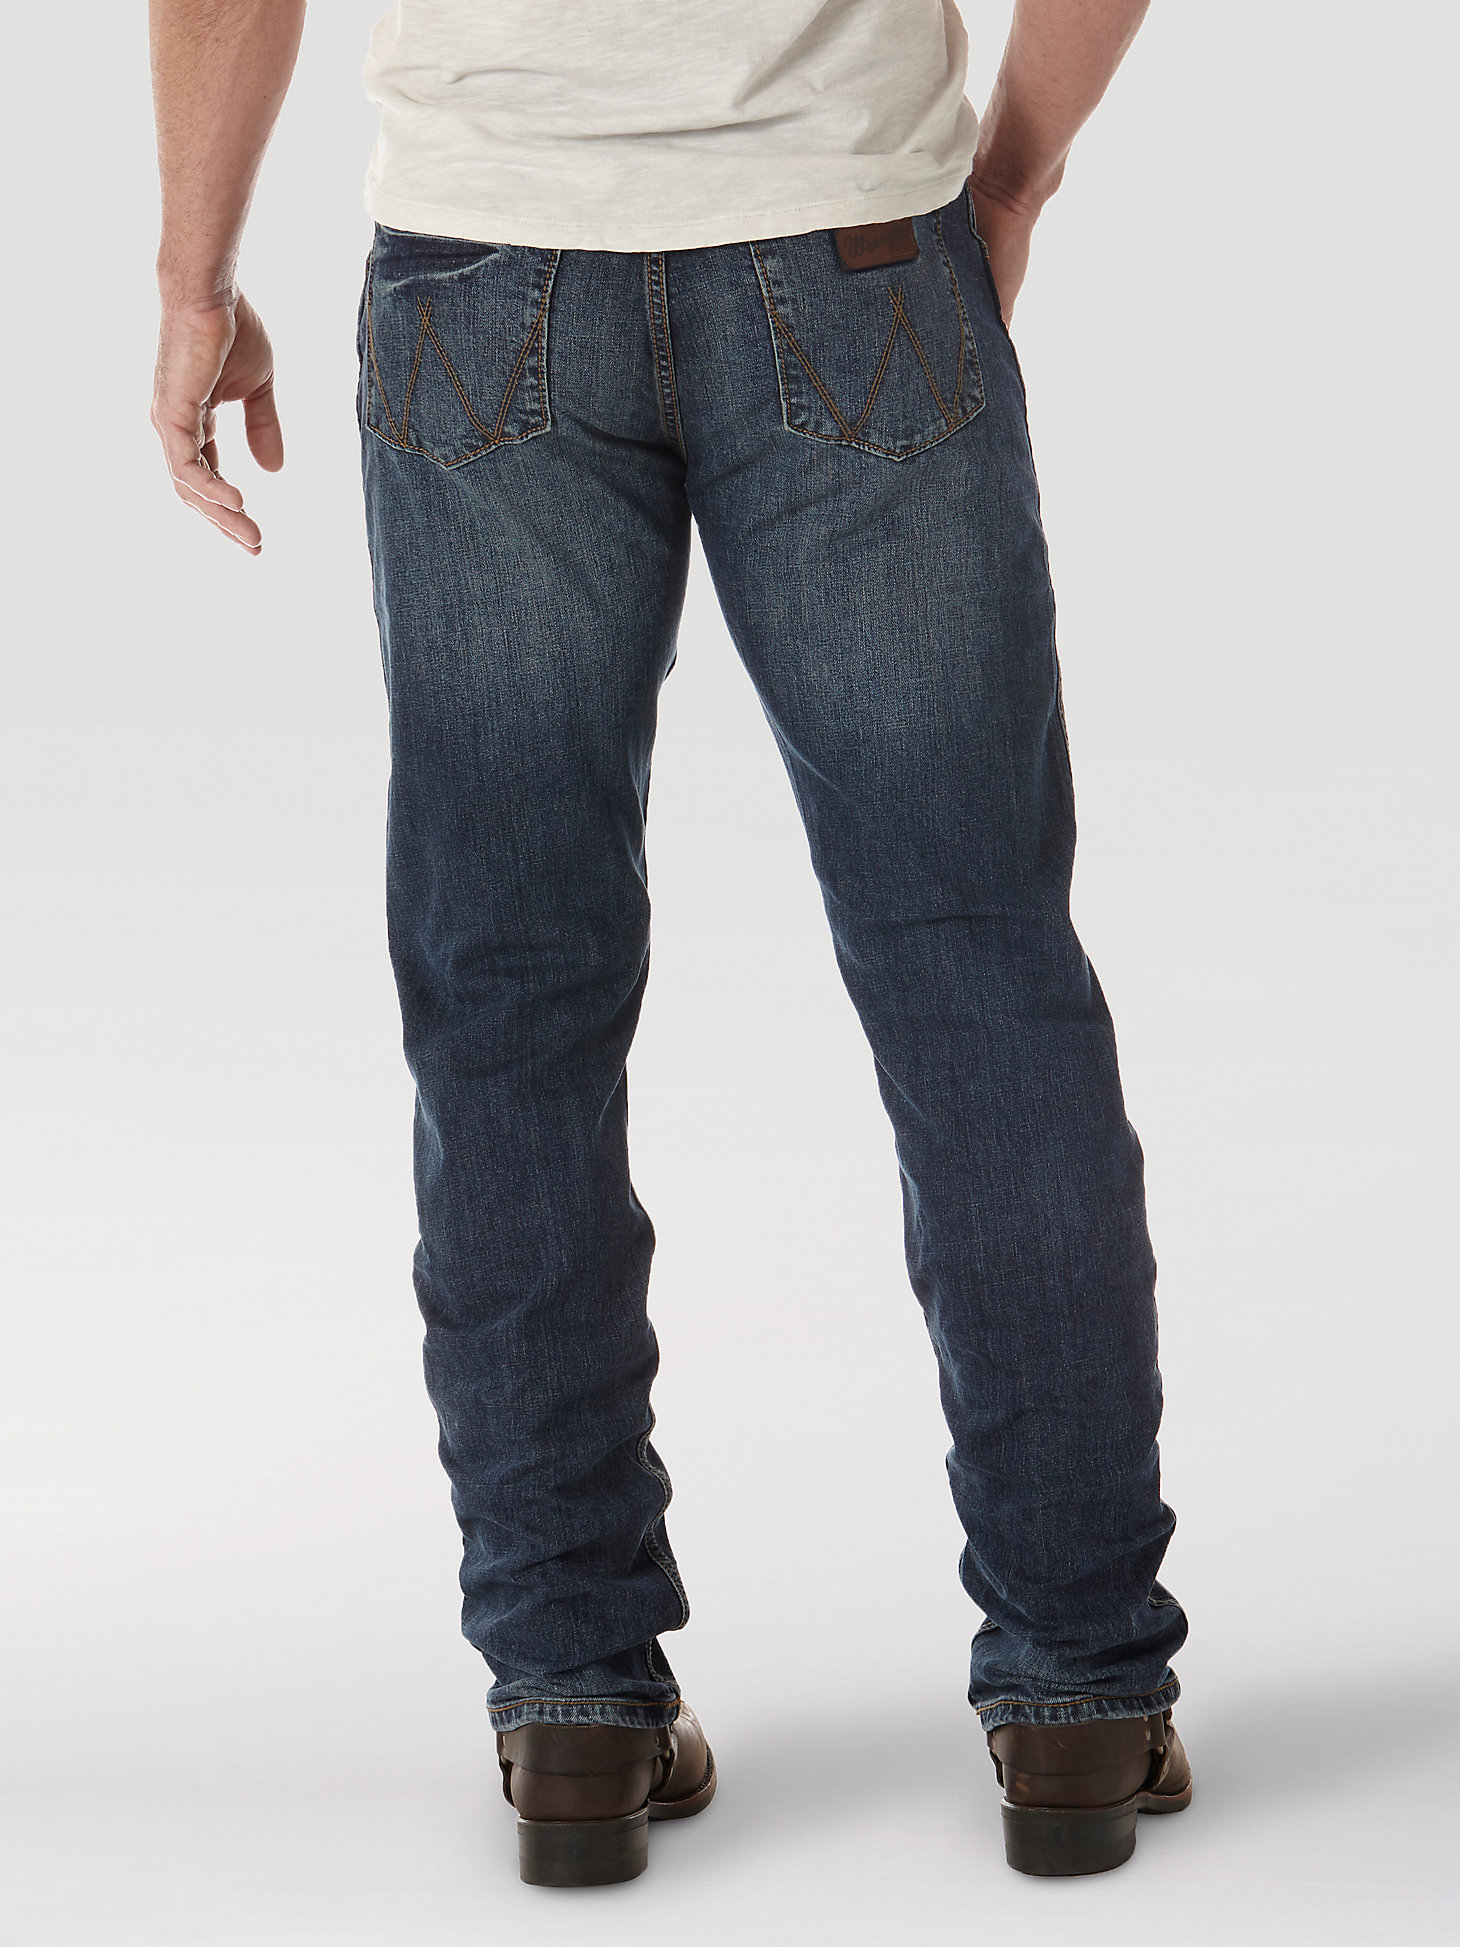 Men's Wrangler Retro® Slim Fit Straight Leg Jean in Bozeman alternative view 3